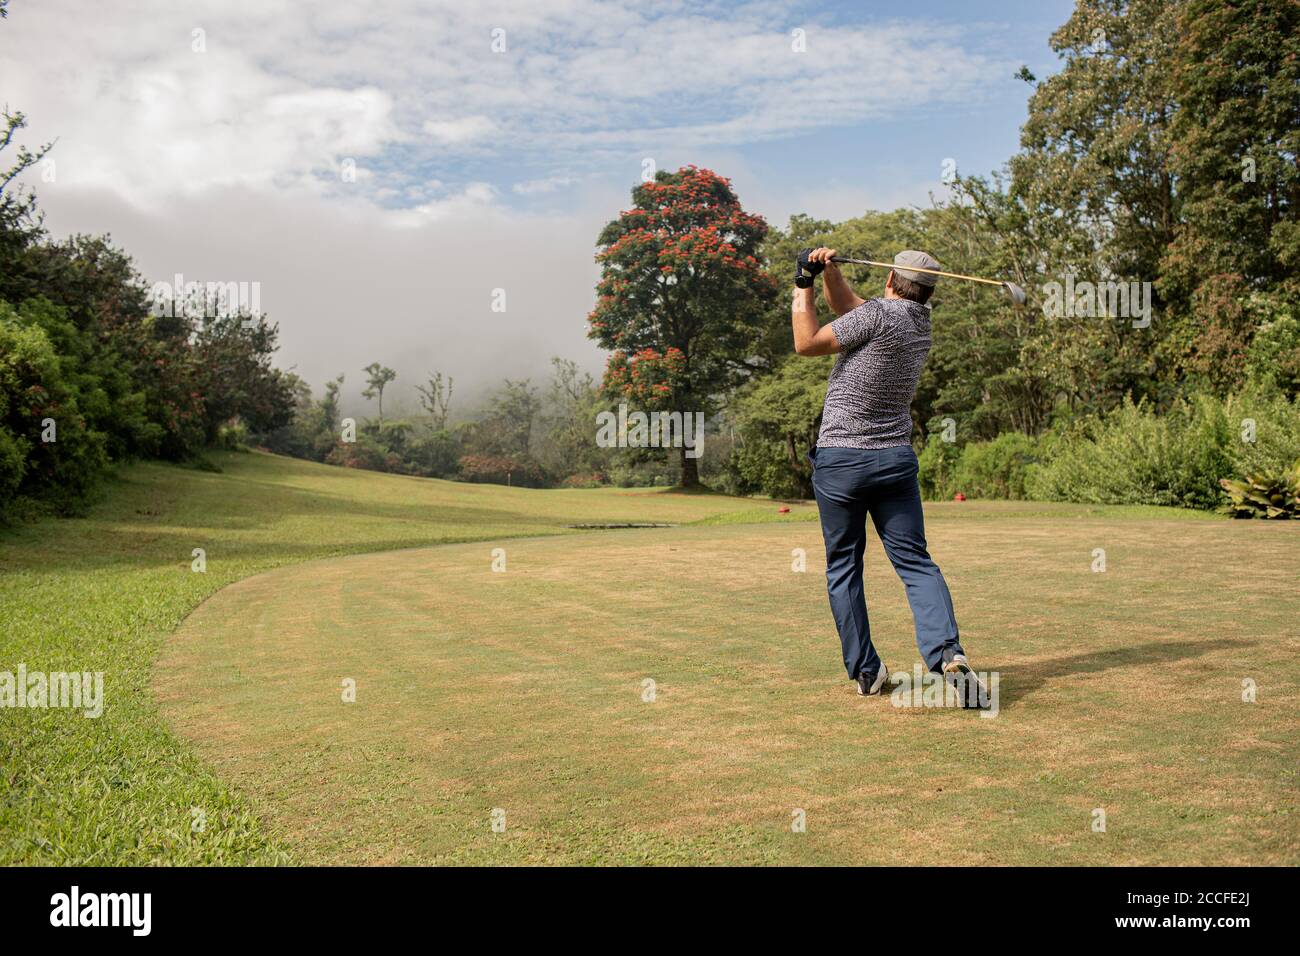 Eine Person, die Golf spielt. Hochwertige Fotos Stockfoto